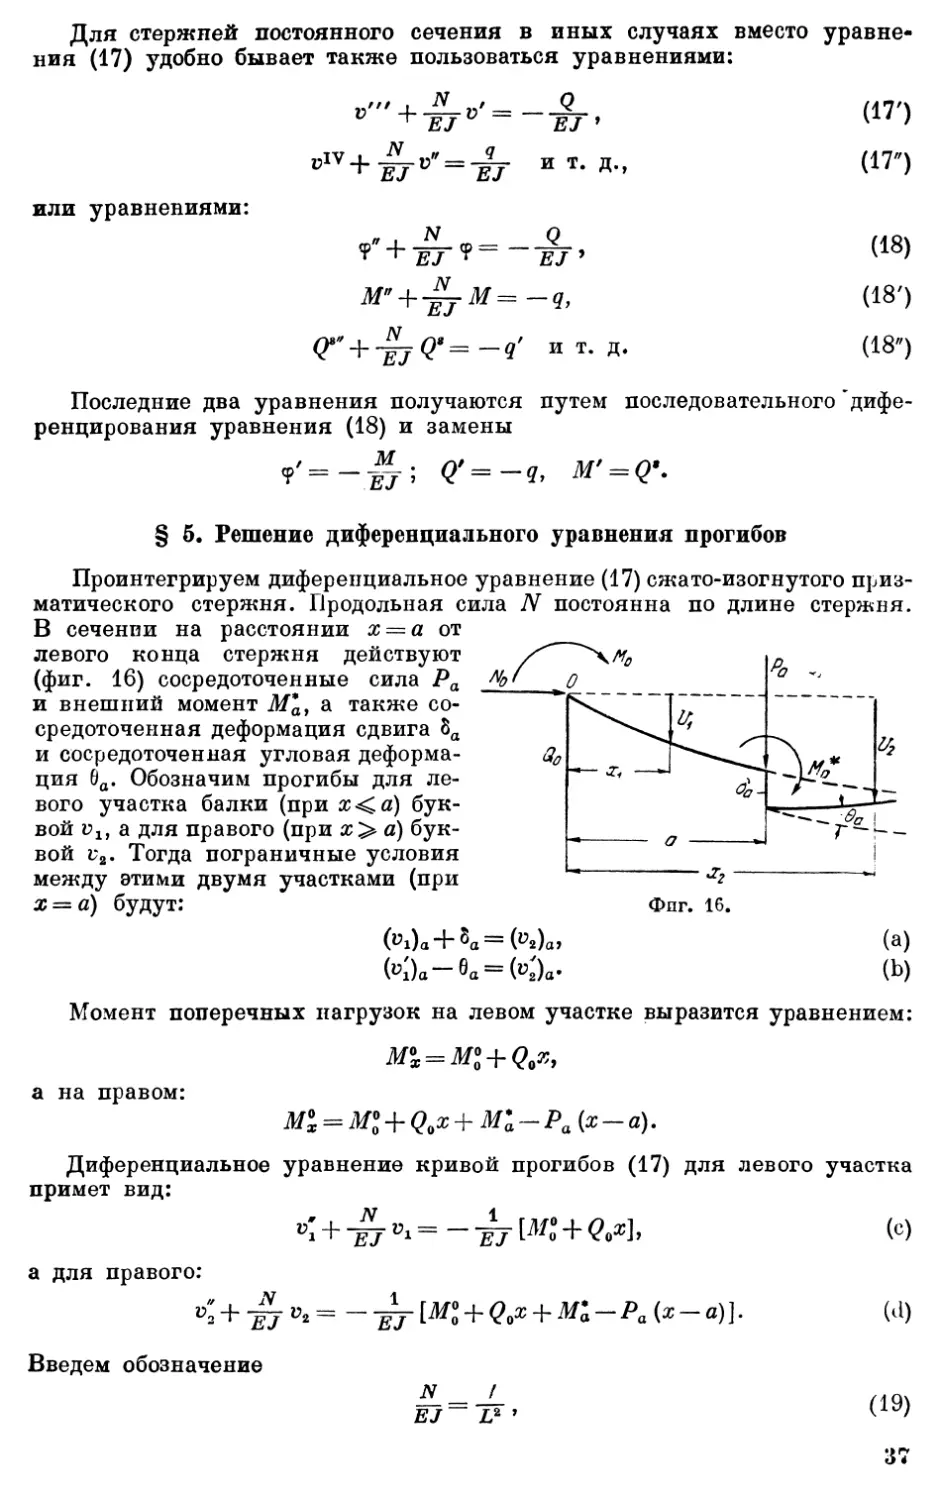 3.5. Решение дифференциального уравнения прогибов